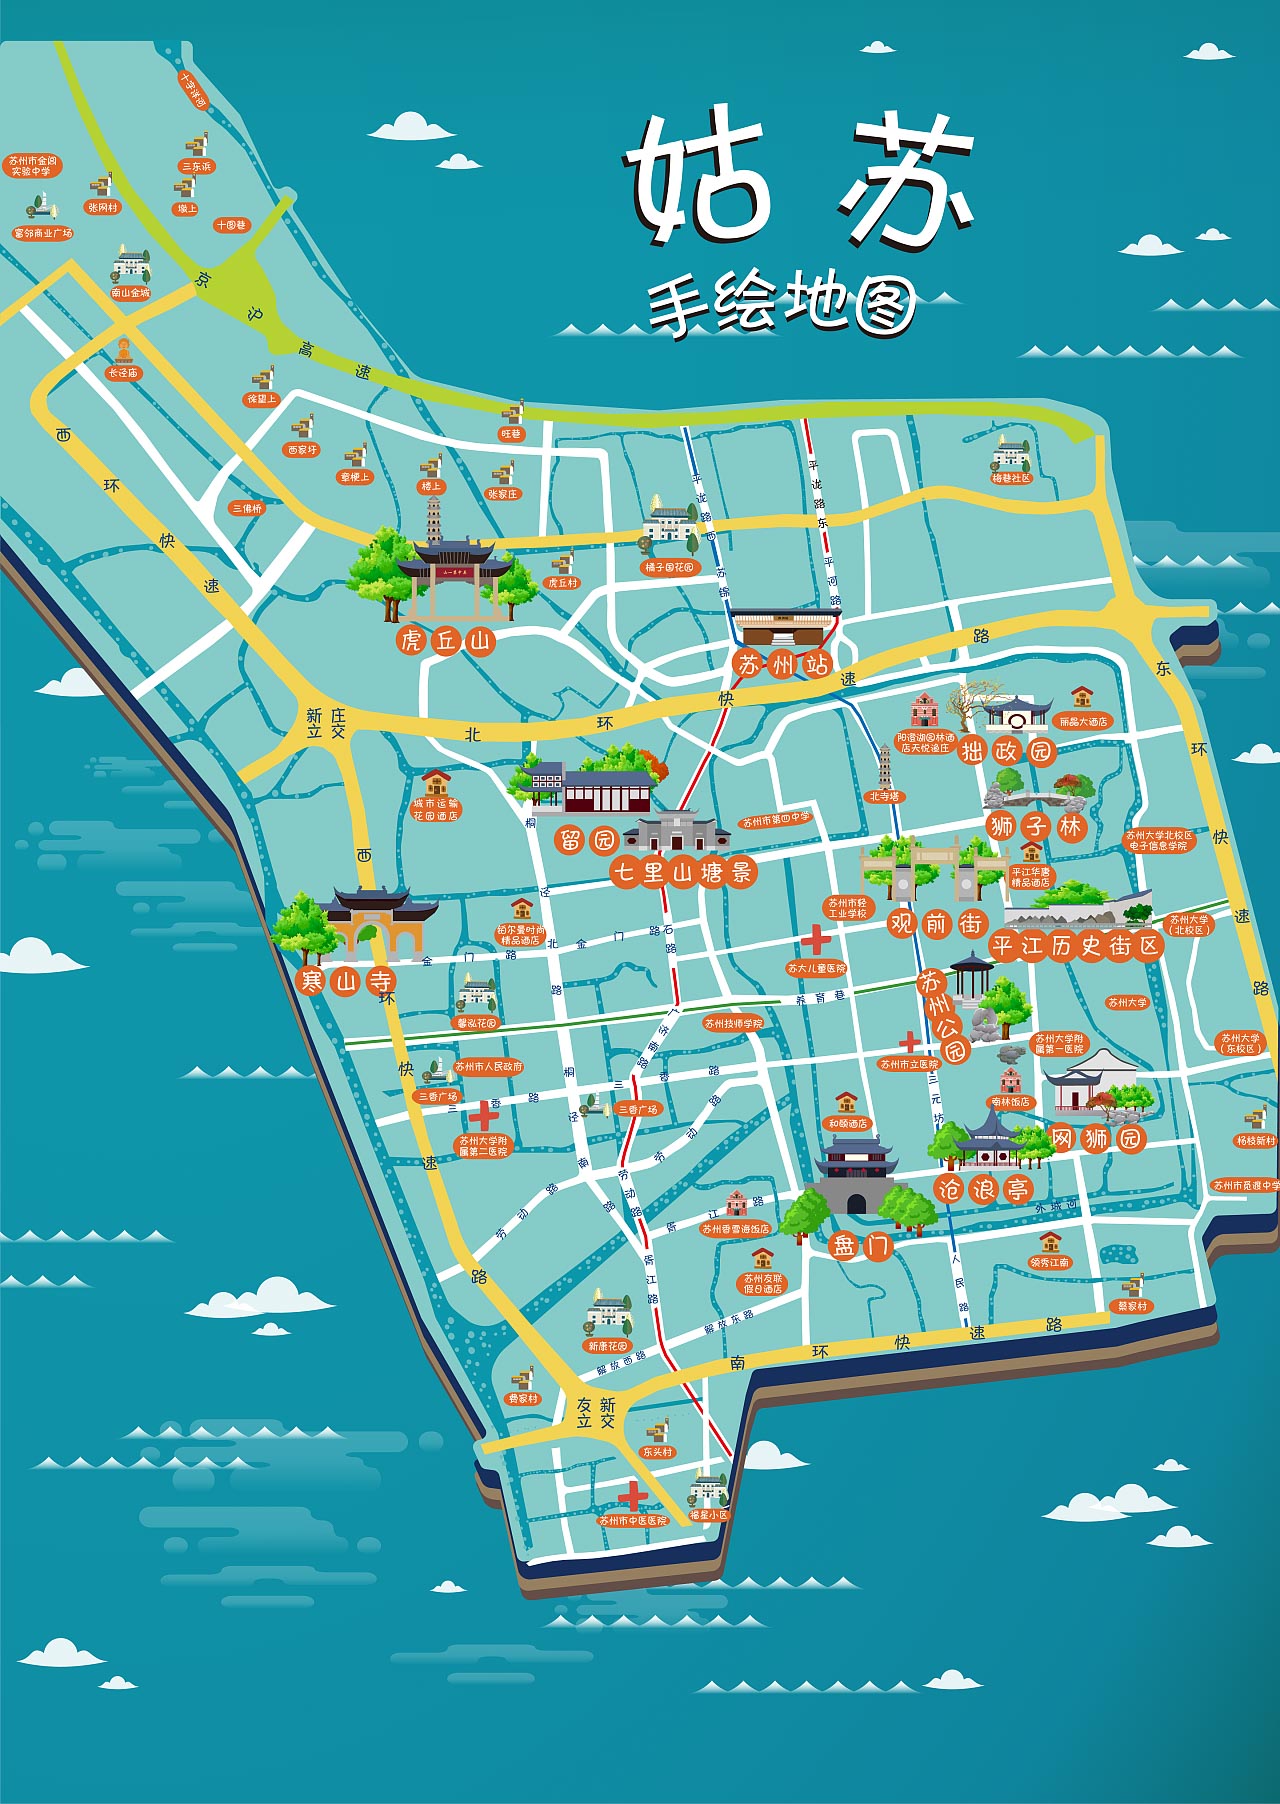 乌烈镇手绘地图景区的文化宝藏